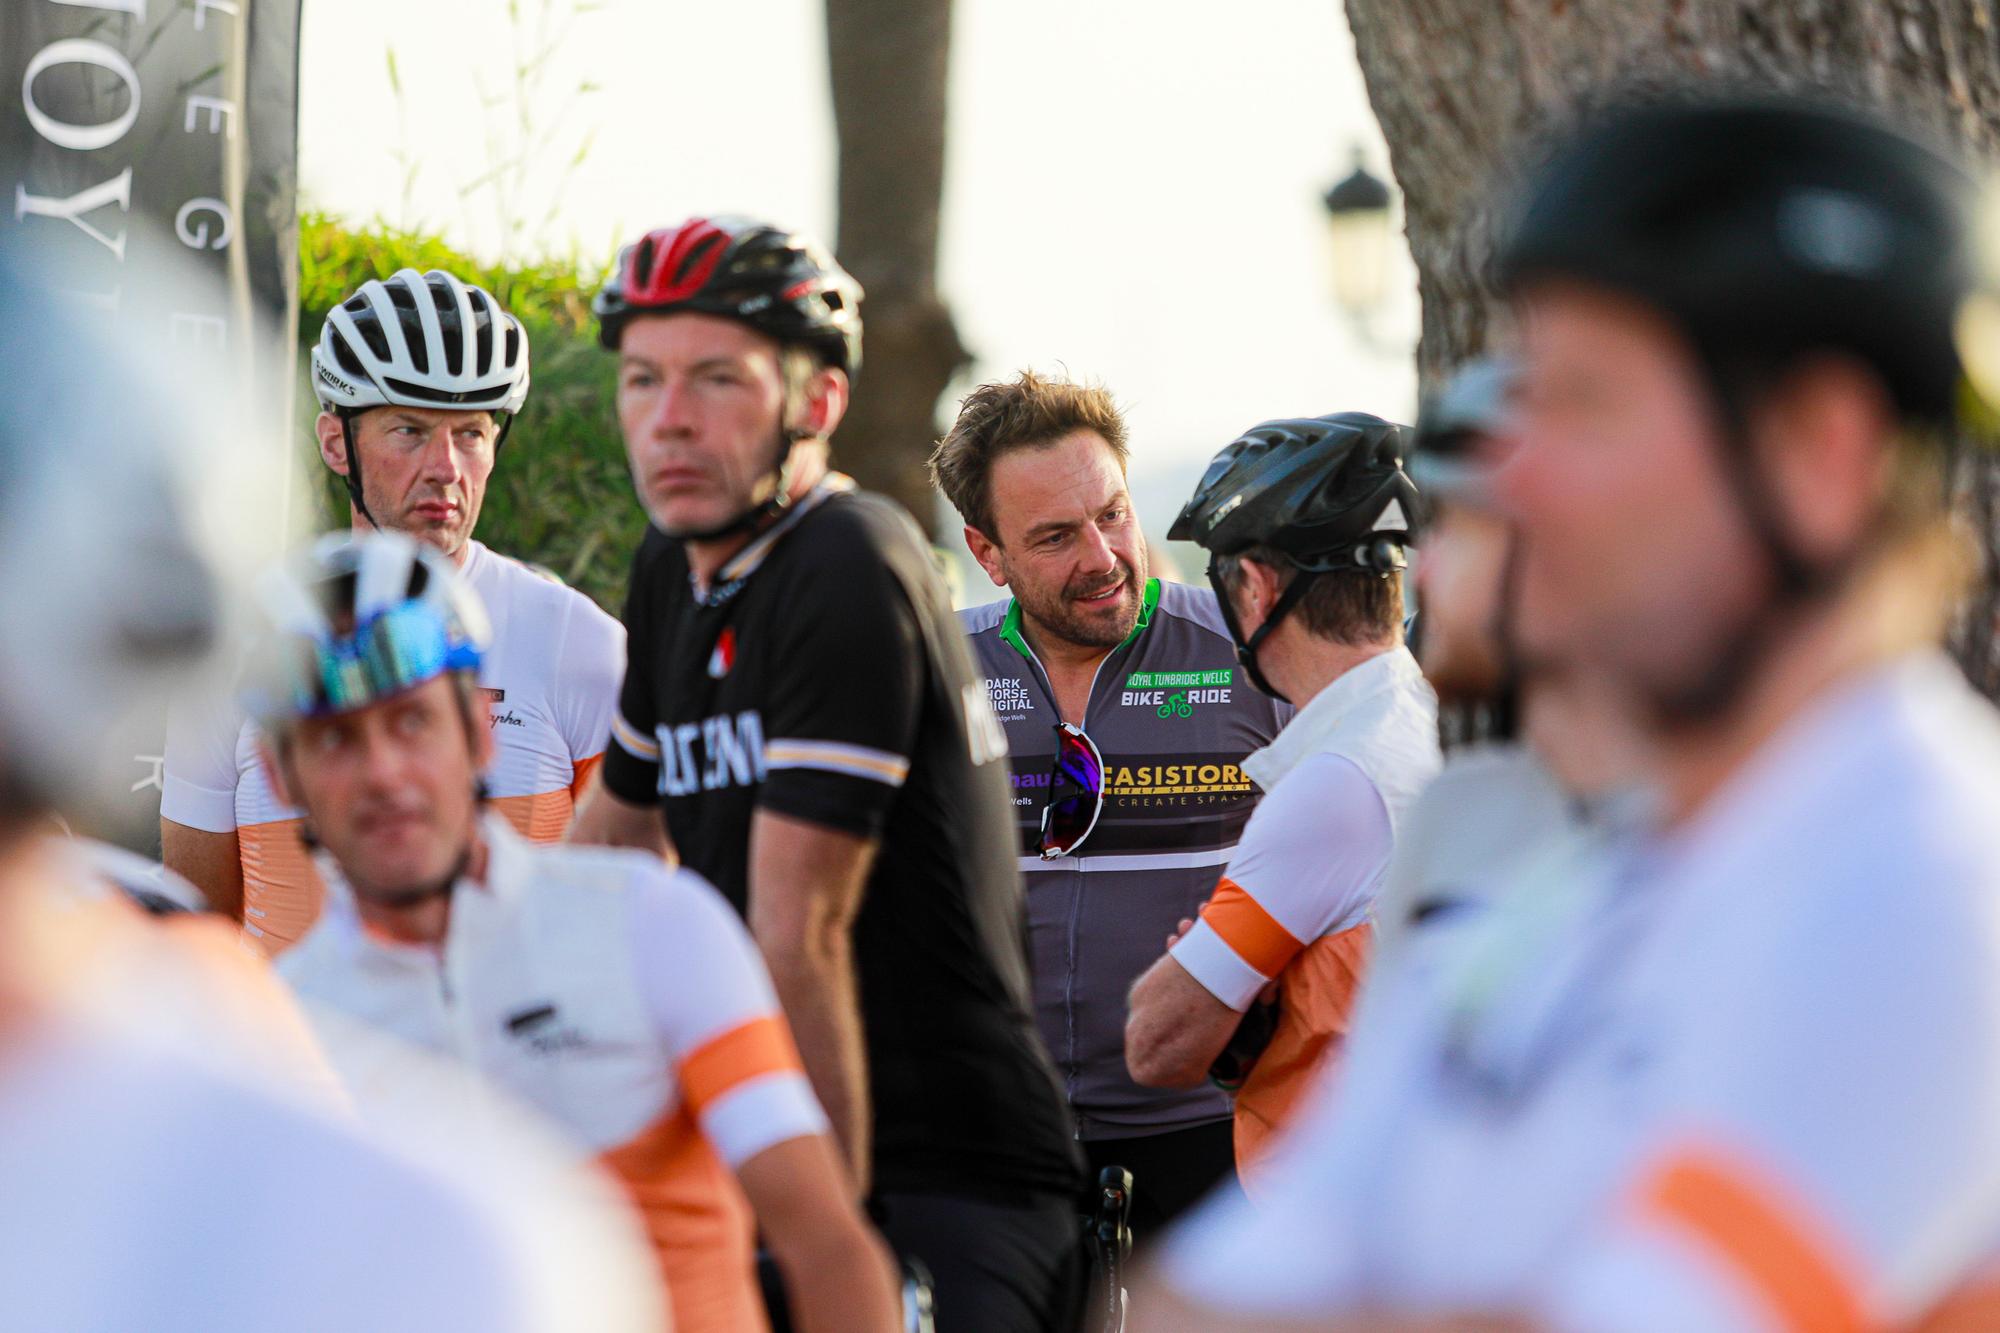 Ibiza acoge un evento ciclista que reúne a leyendas del ciclismo